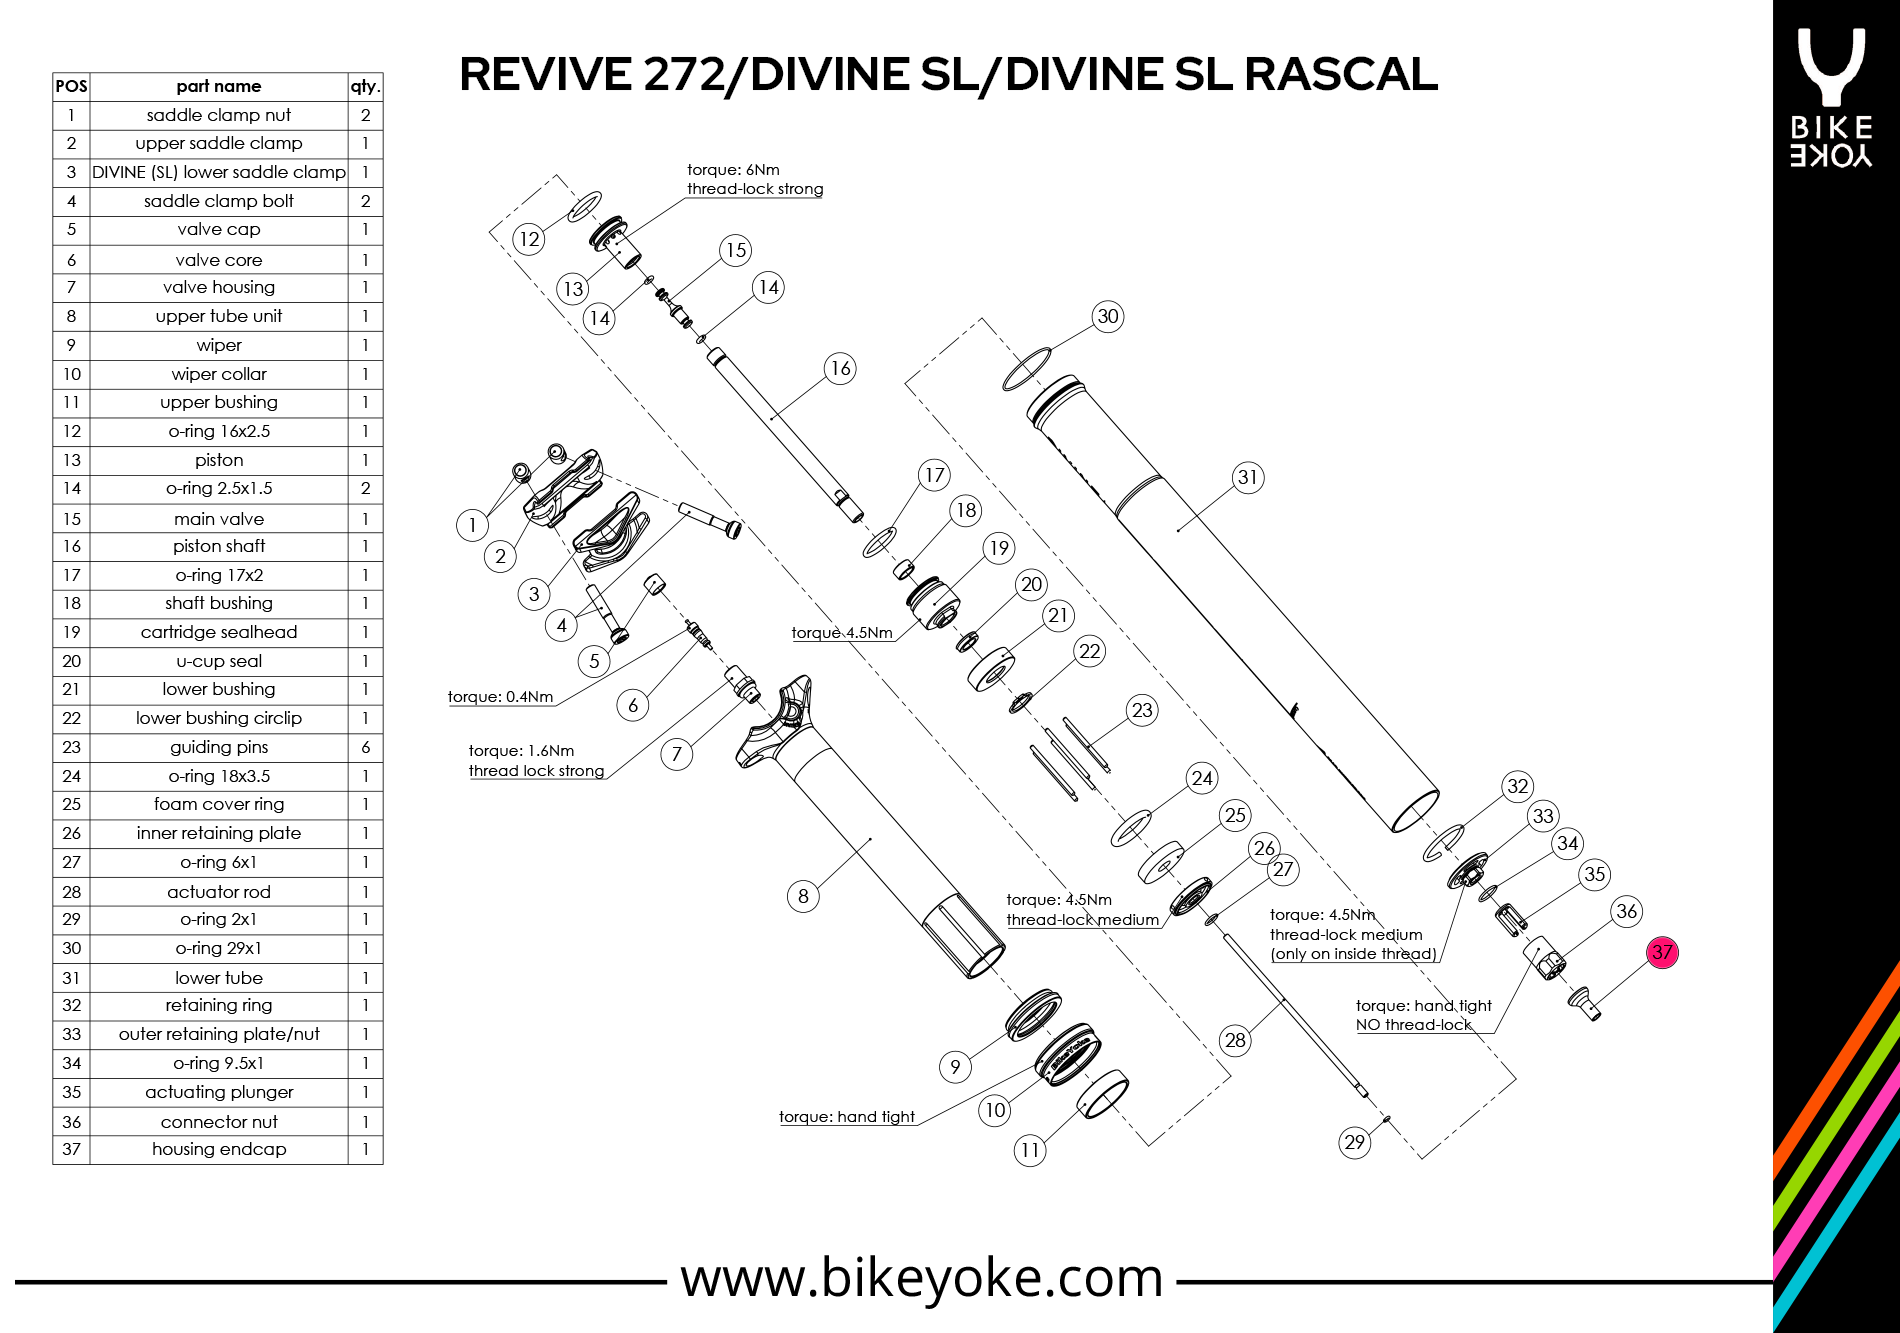 DIVINE SL / Rascal / REVIVE 272 - cable endcap